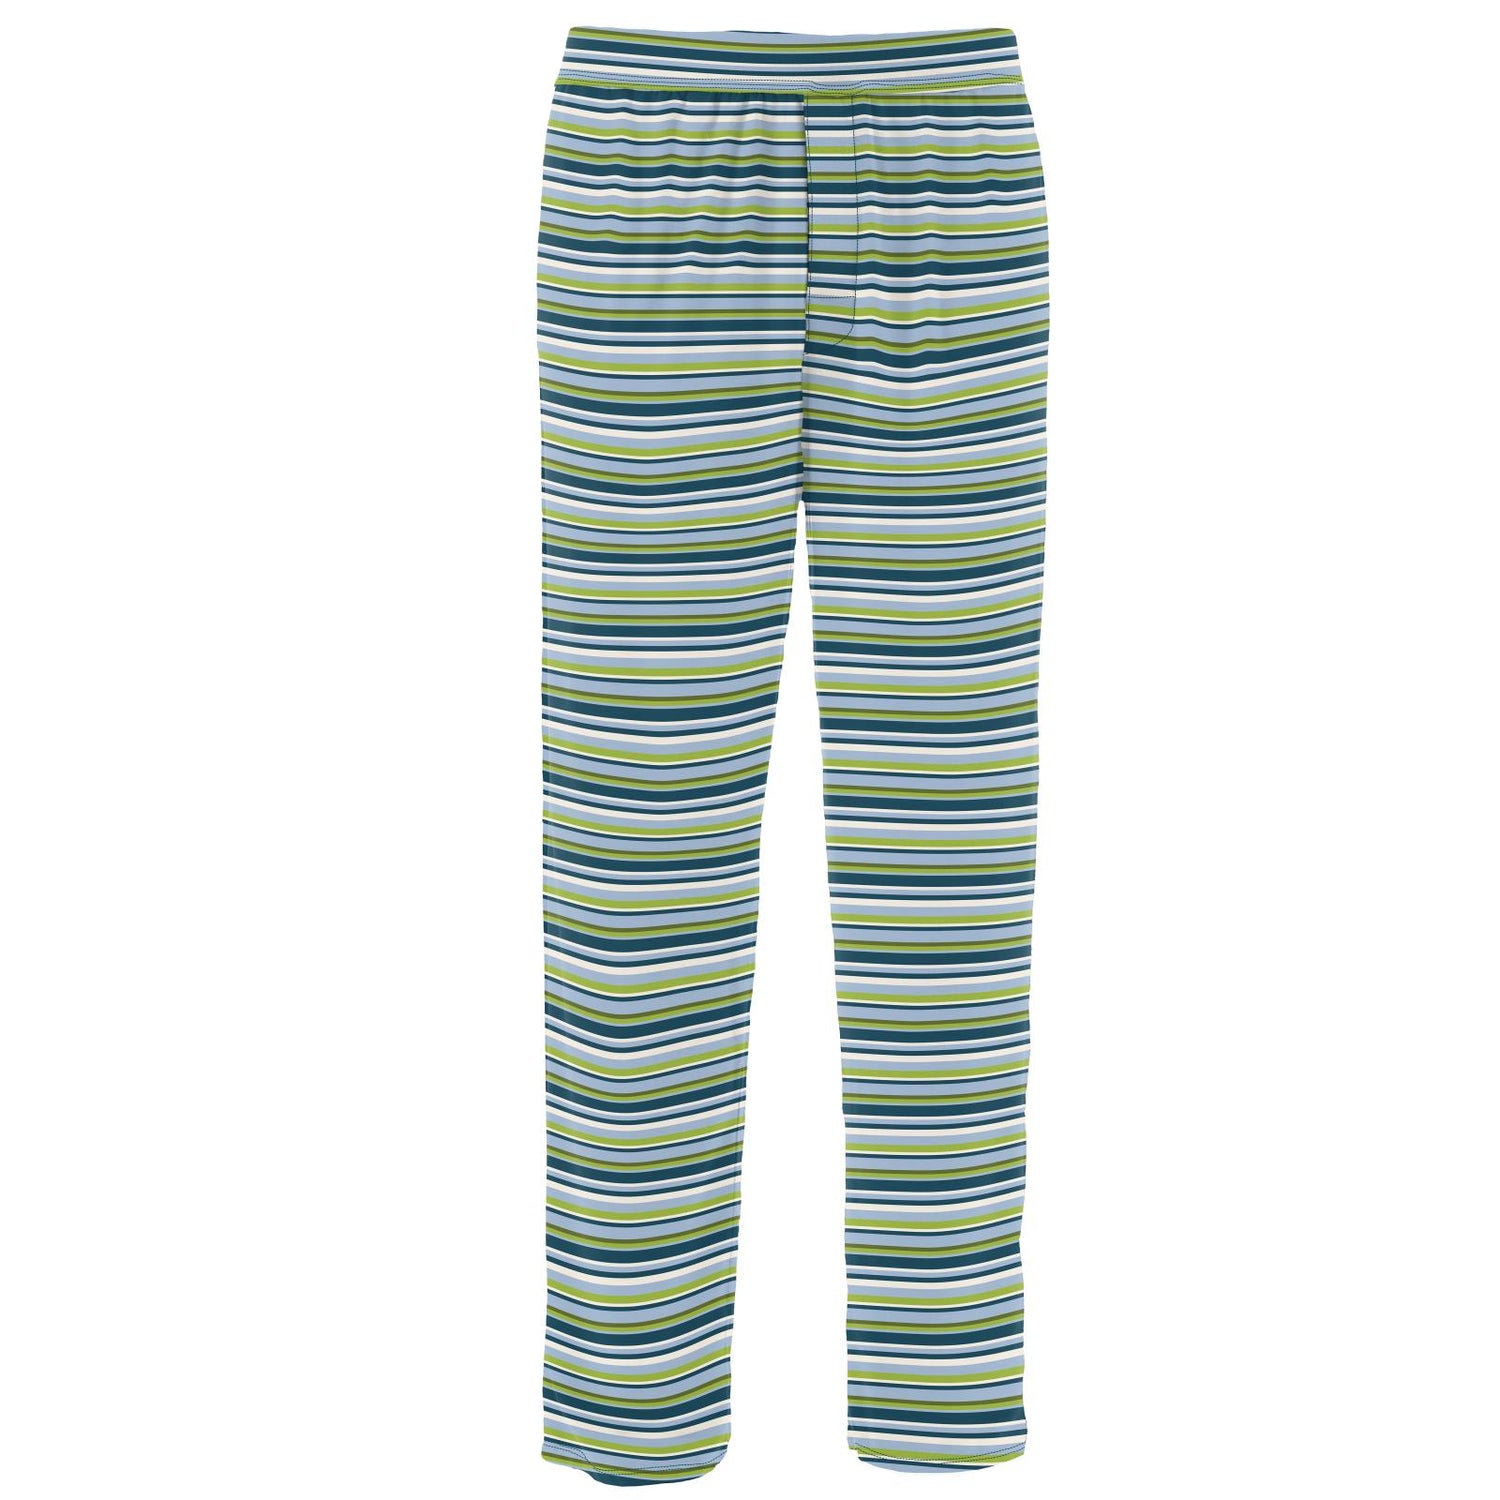 Men's Print Pajama Pants in Anniversary Sailaway Stripe